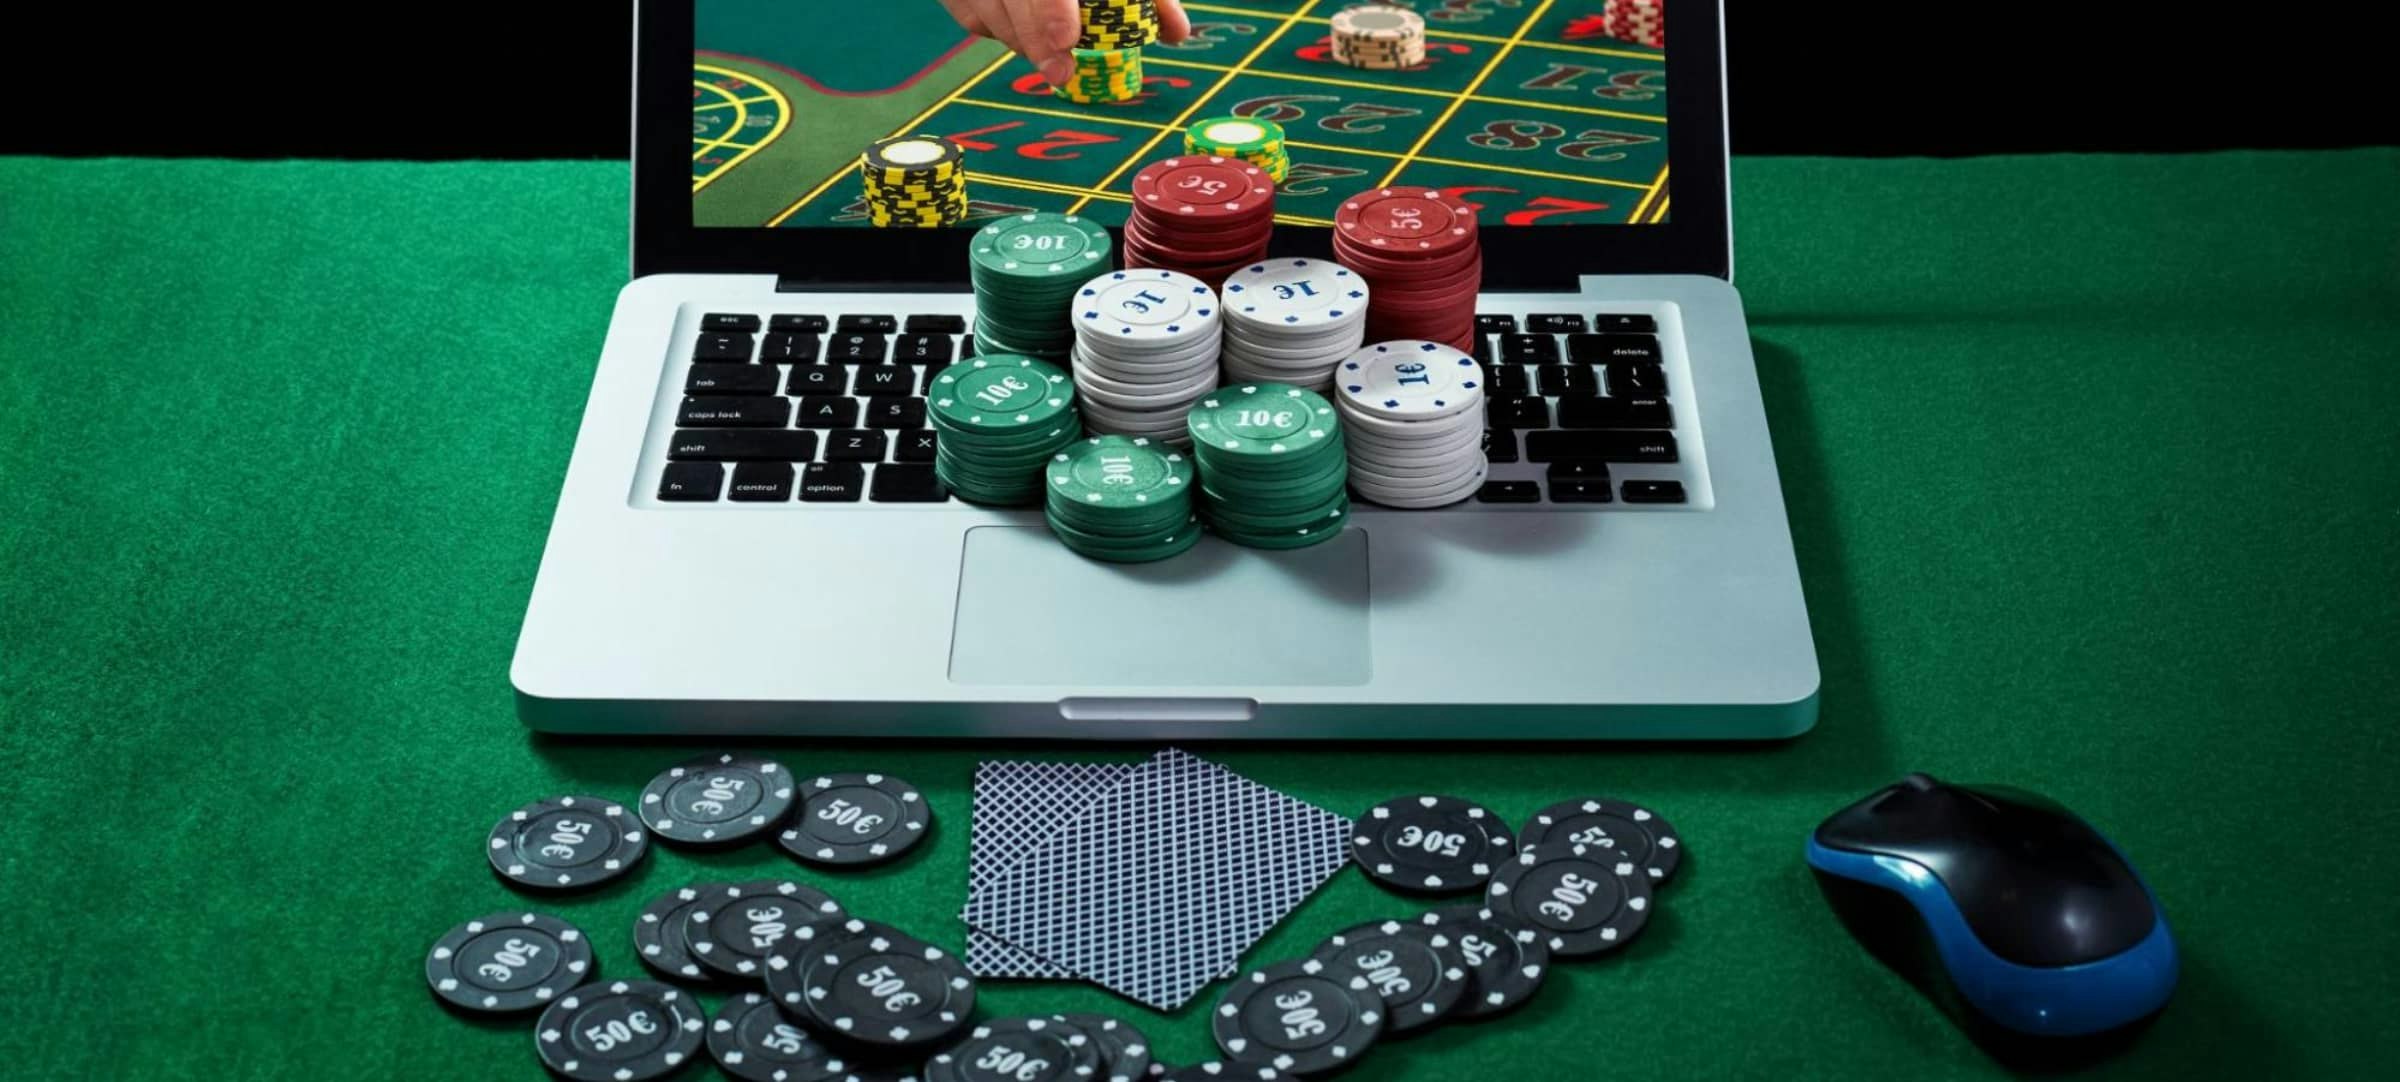 Casino en bitcoins et casinos traditionnels : Quelles sont les différences ?